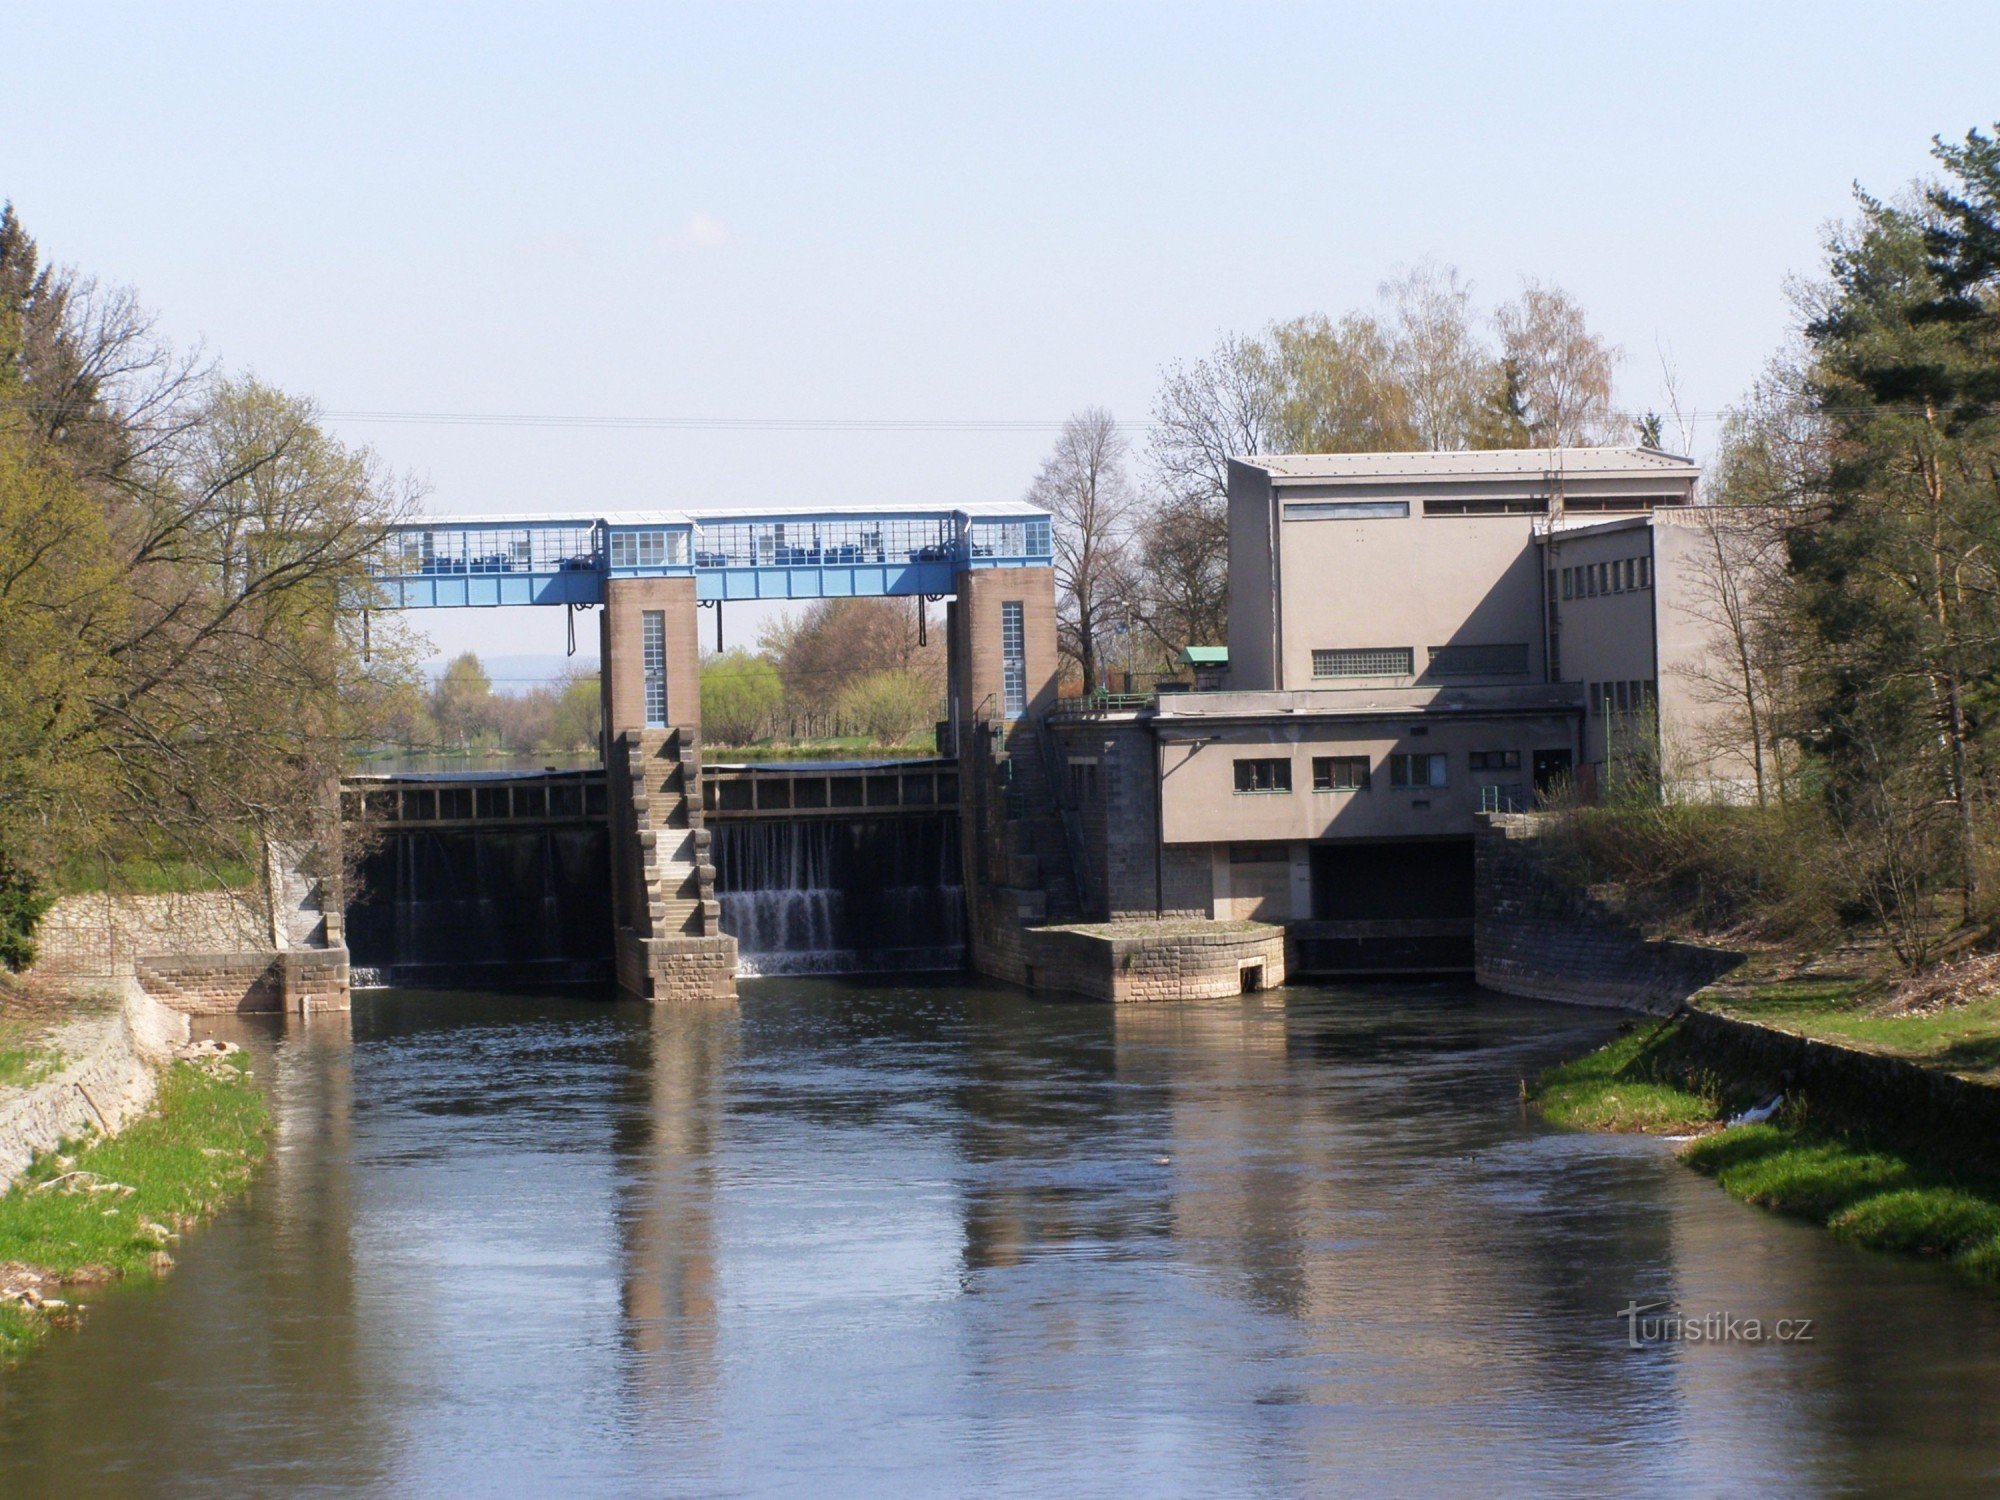 Smiřický-dammen - vattenkraftverk på Elbe